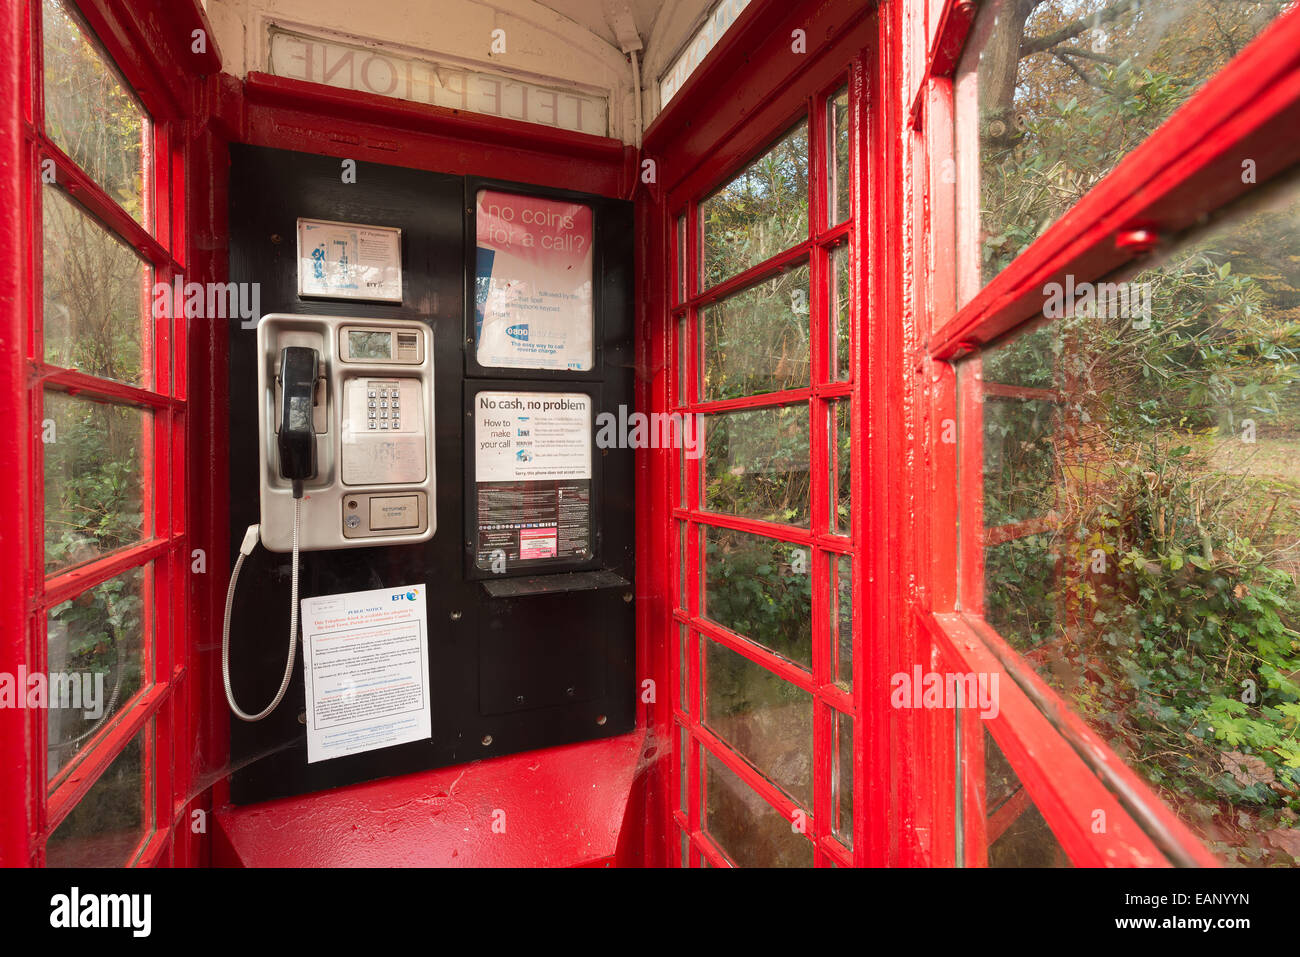 traditionelle alte altmodische unbenutzte rote Telefon Box zur Veranschaulichung wechselnden Kommunikationskulturen und redundante alte Technologie Stockfoto